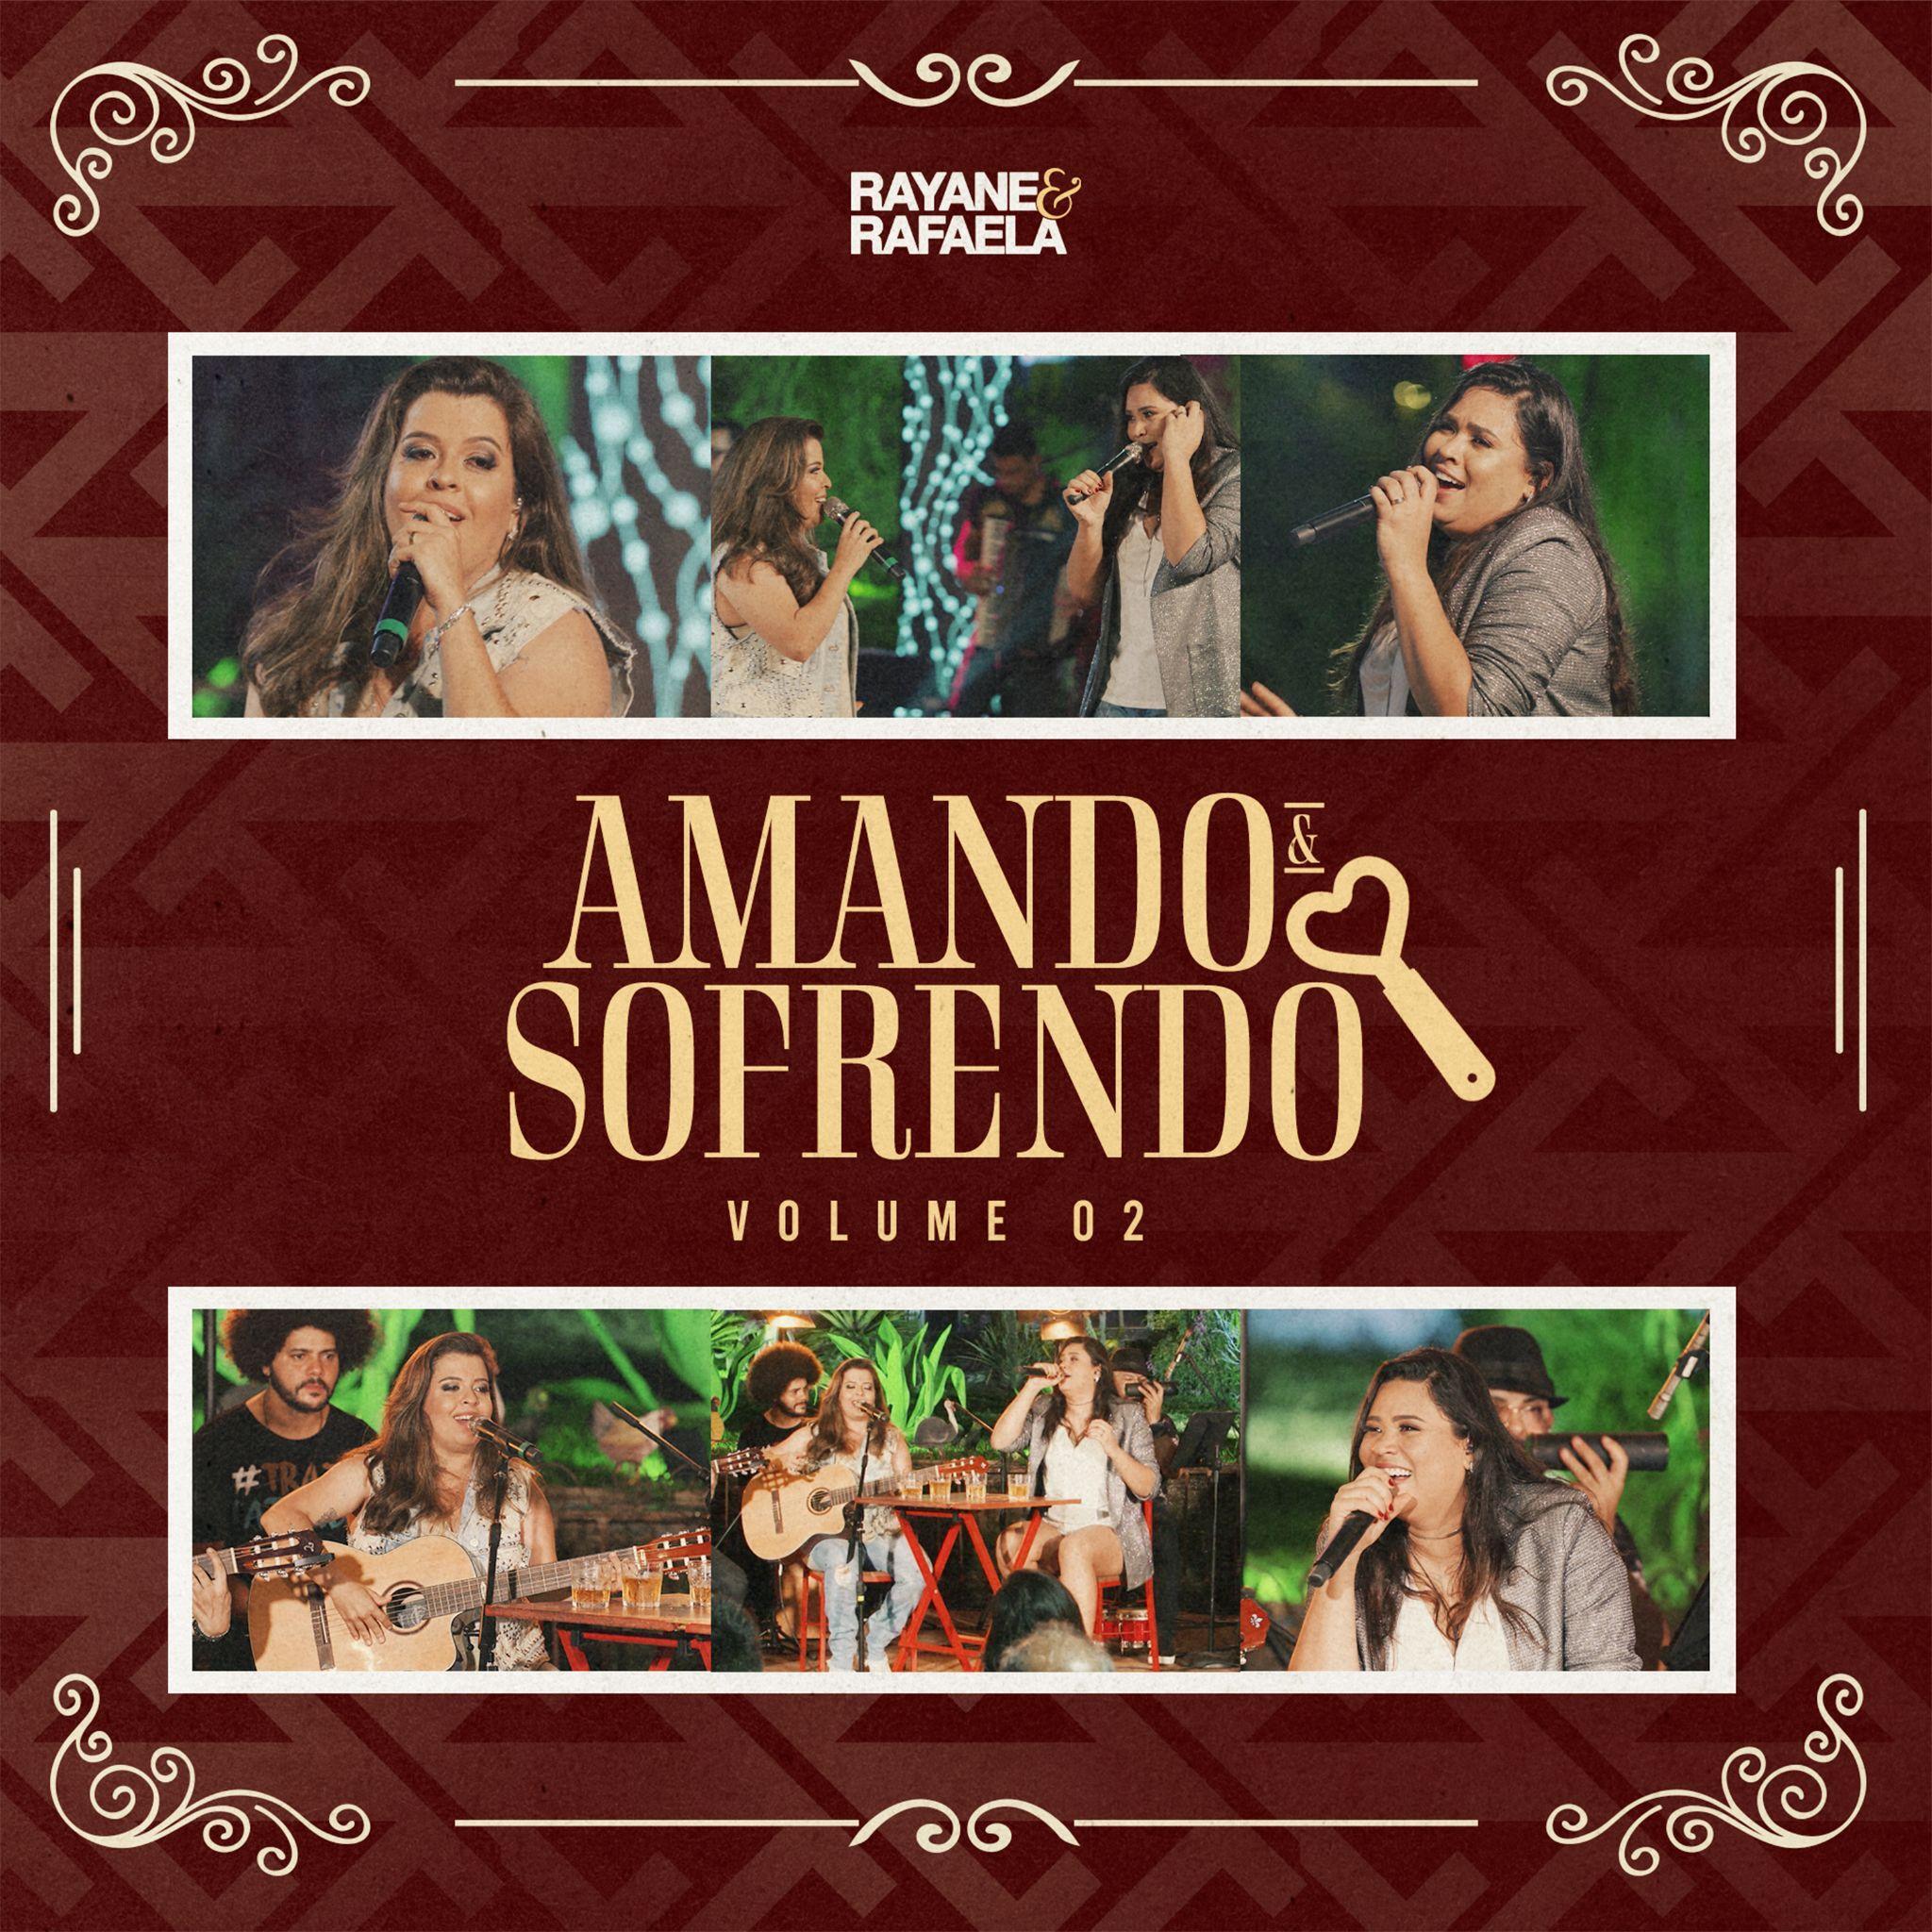 Rayane & Rafaela lançam volume 2 do álbum "Amando e Sofrendo" nesta sexta (05) 41